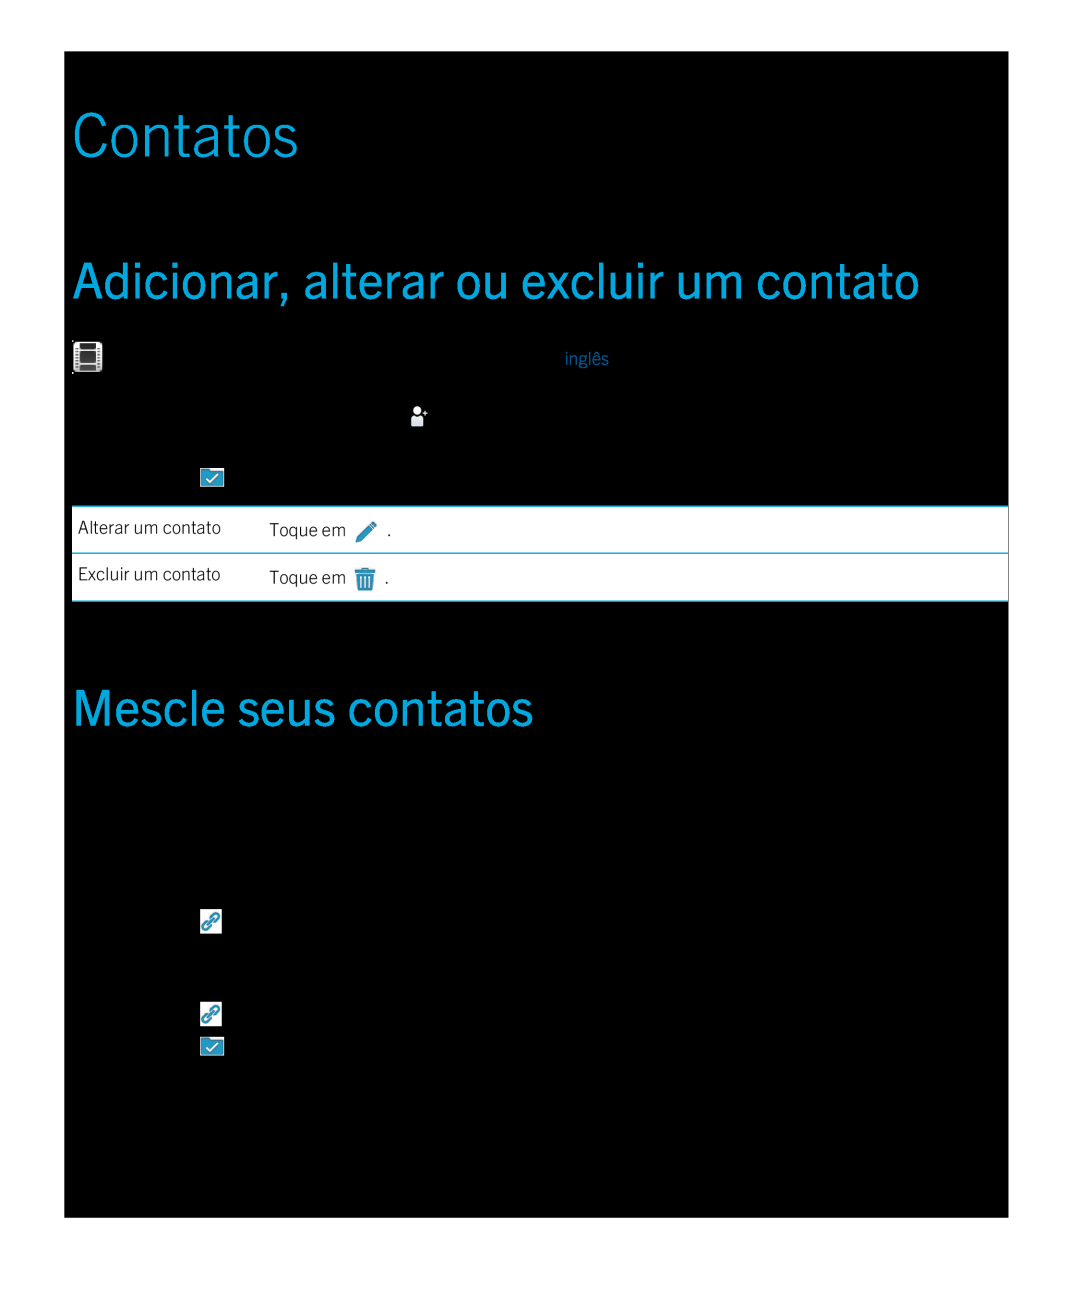 Blackberry 2.0.1 manual Contatos, Adicionar, alterar ou excluir um contato, Mescle seus contatos, Toque em Adicionar Link 